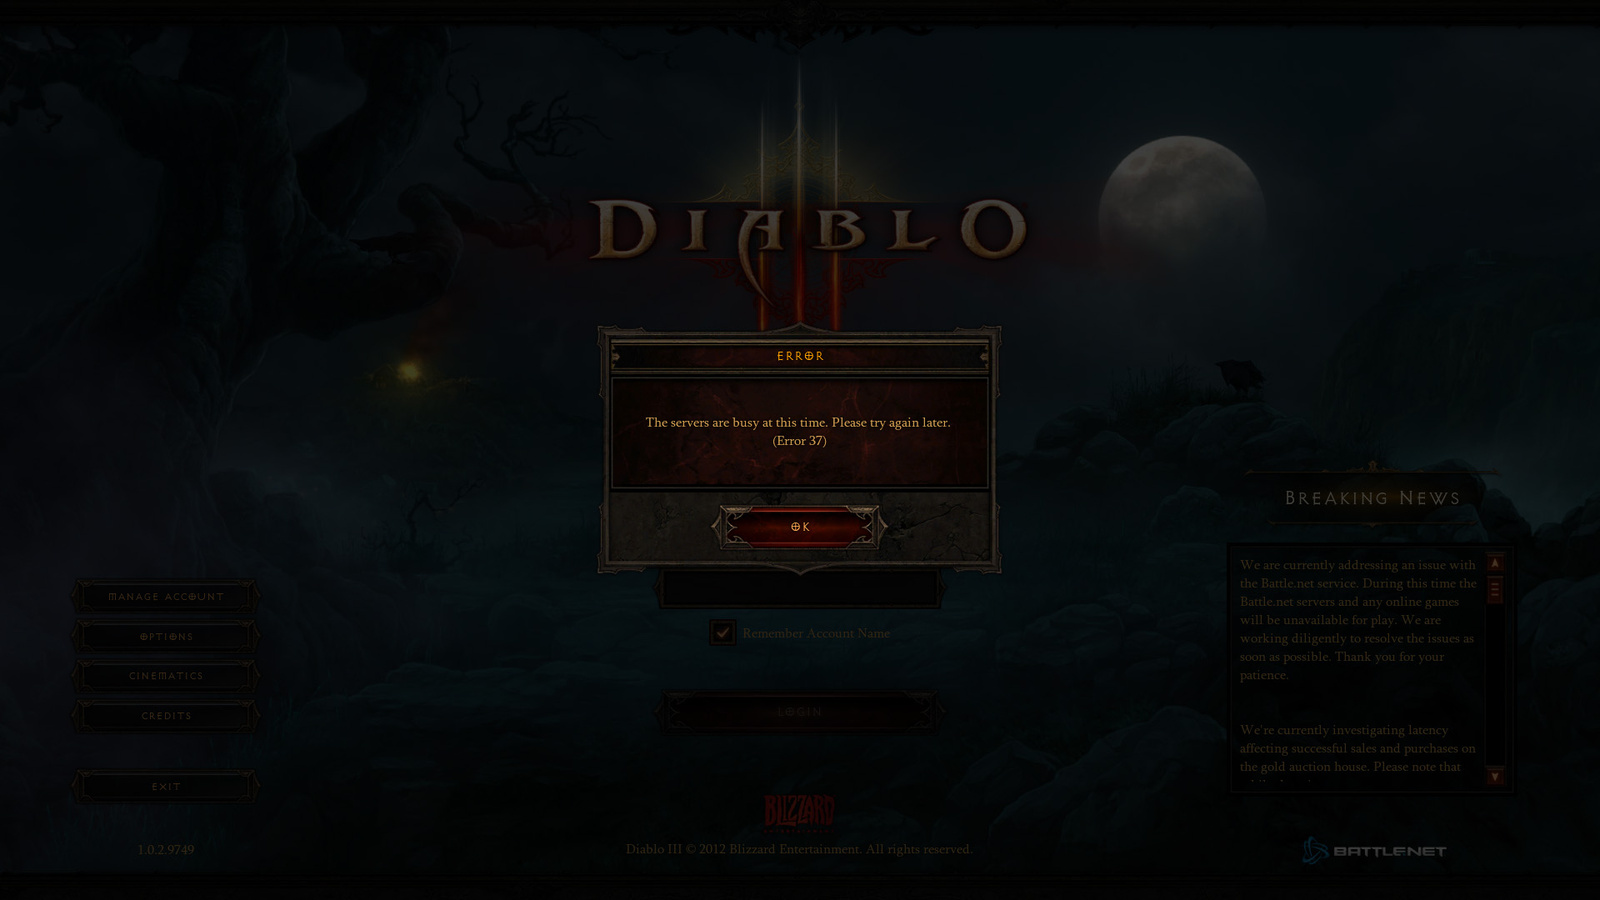 Diablo III legemlékezetesebb pillanata